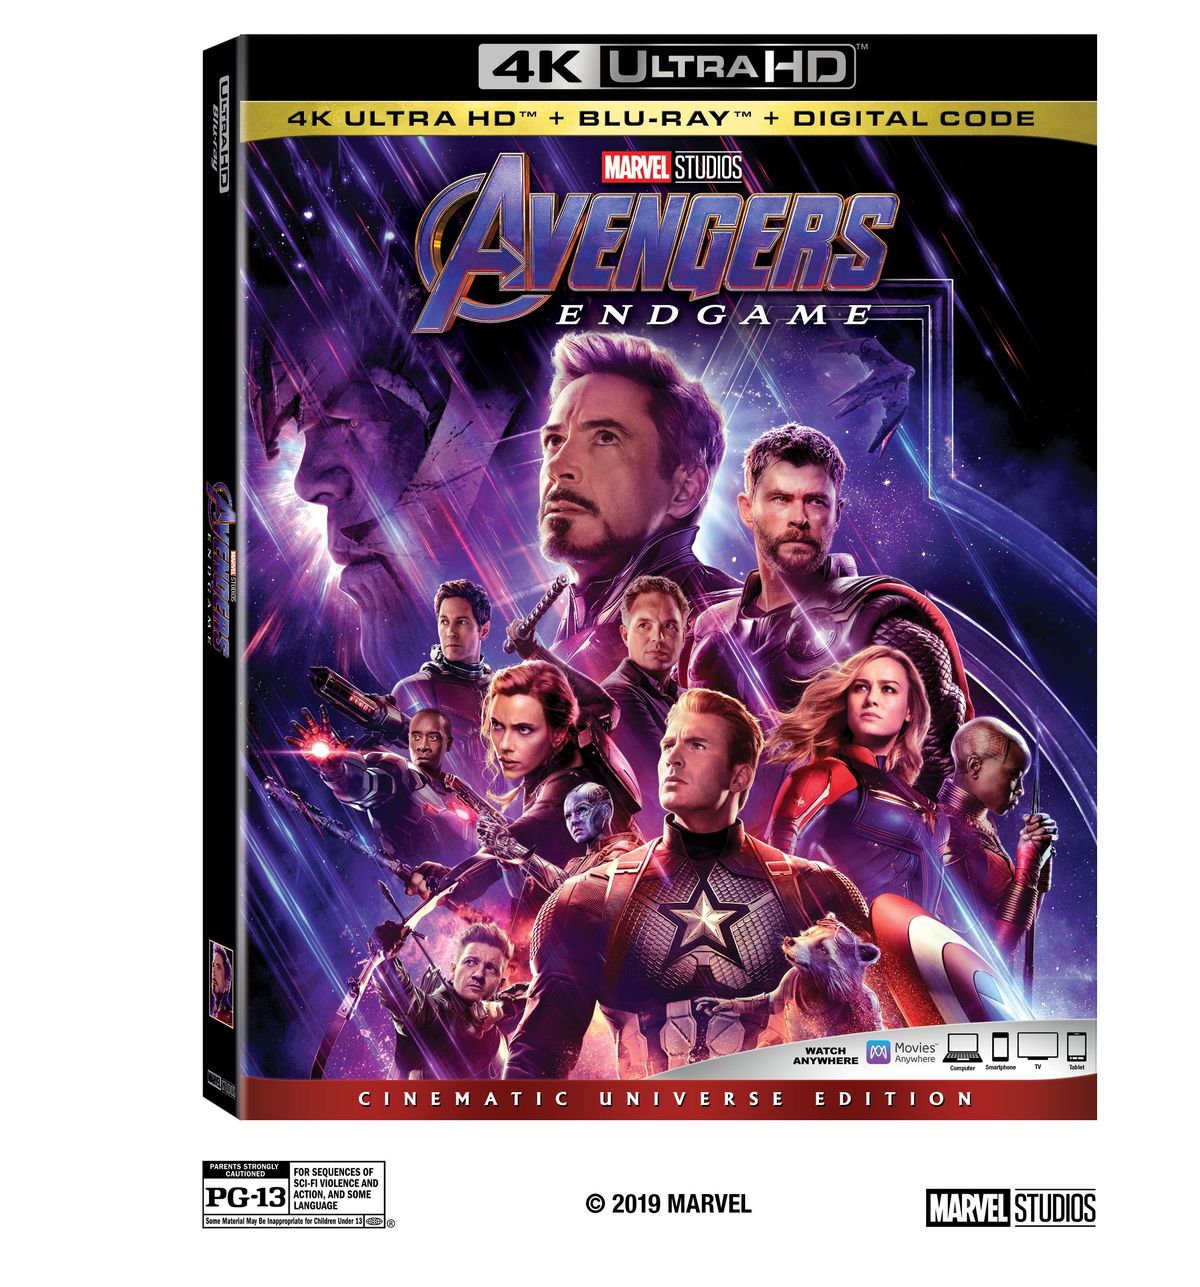 Avengers: Endgame Home Video Release Dates, erikoisominaisuudet ilmoitettu